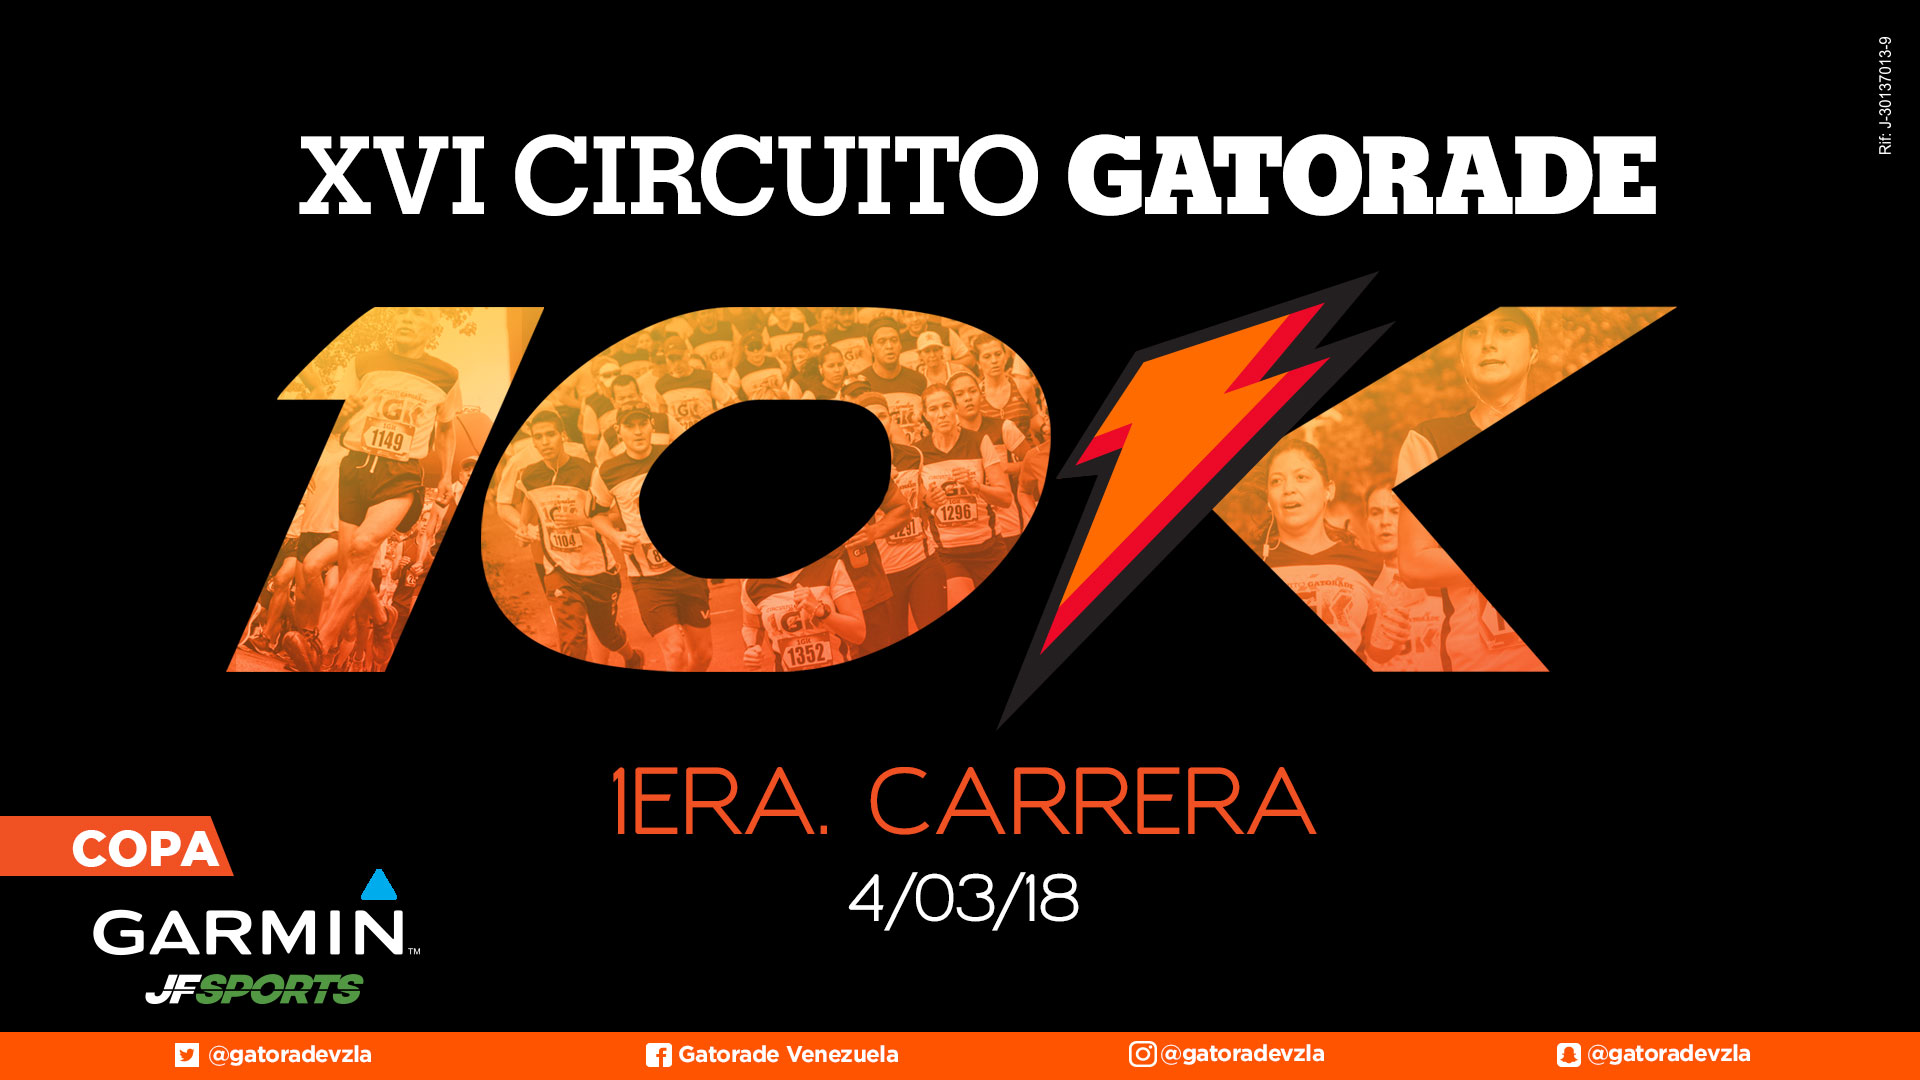 1era Carrera 10K XVI Circuito Gatorade - Copa Garmin 